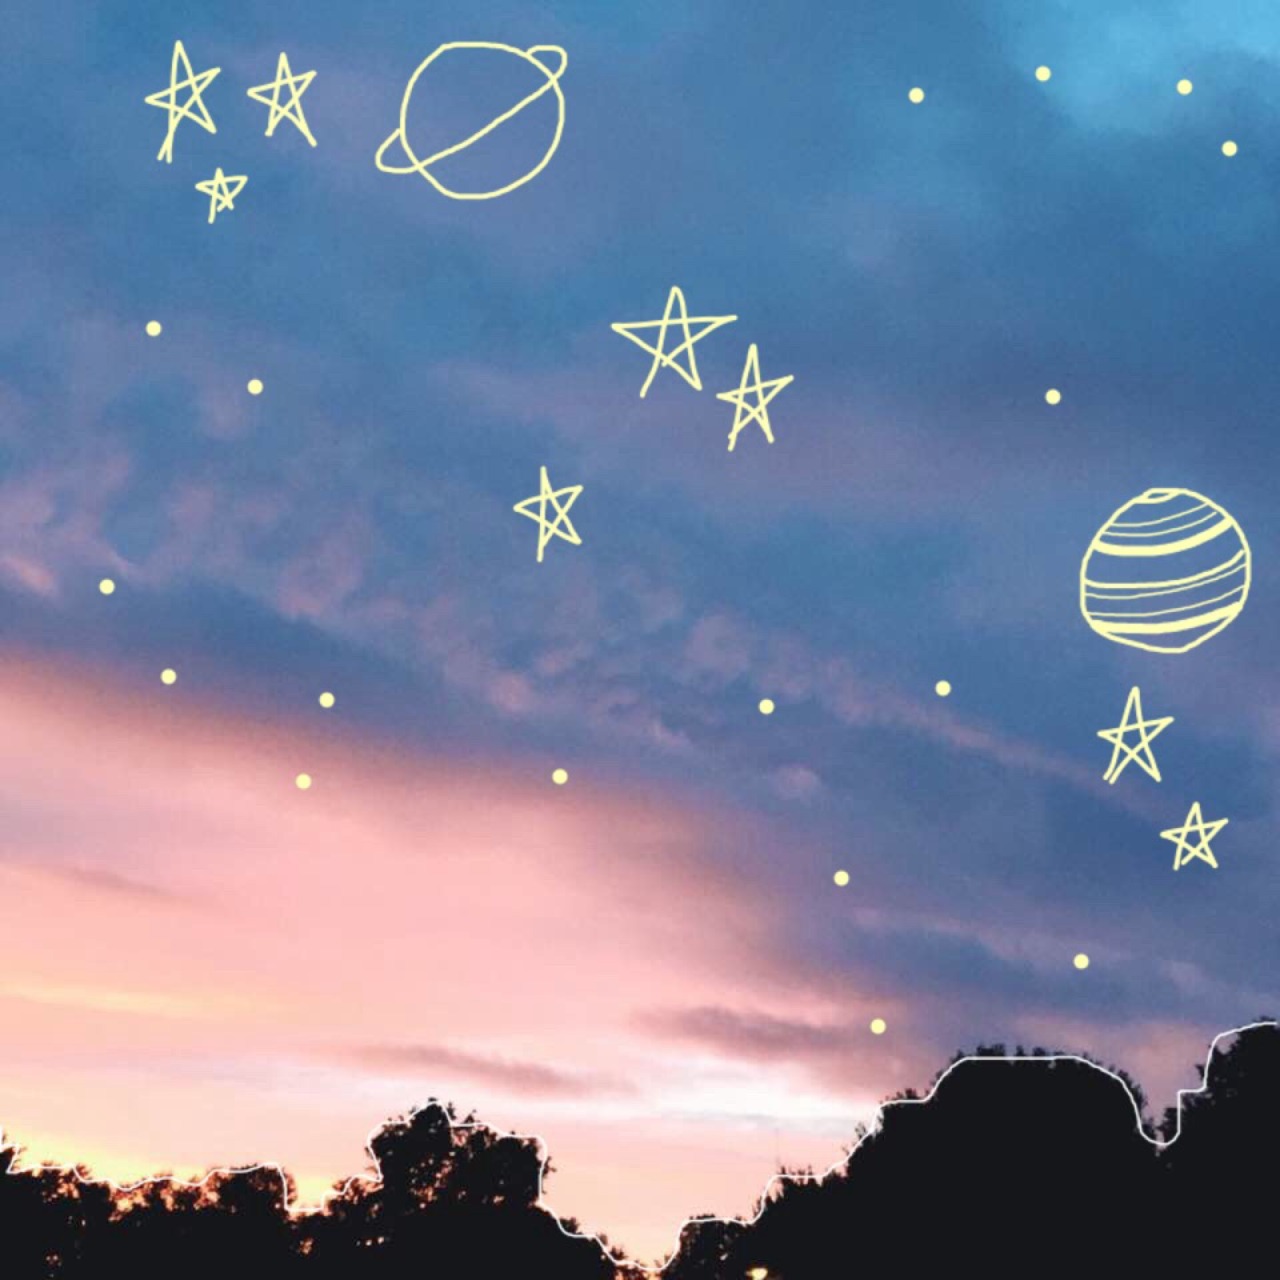 mon étoile - fave skies of 2015 + doodles